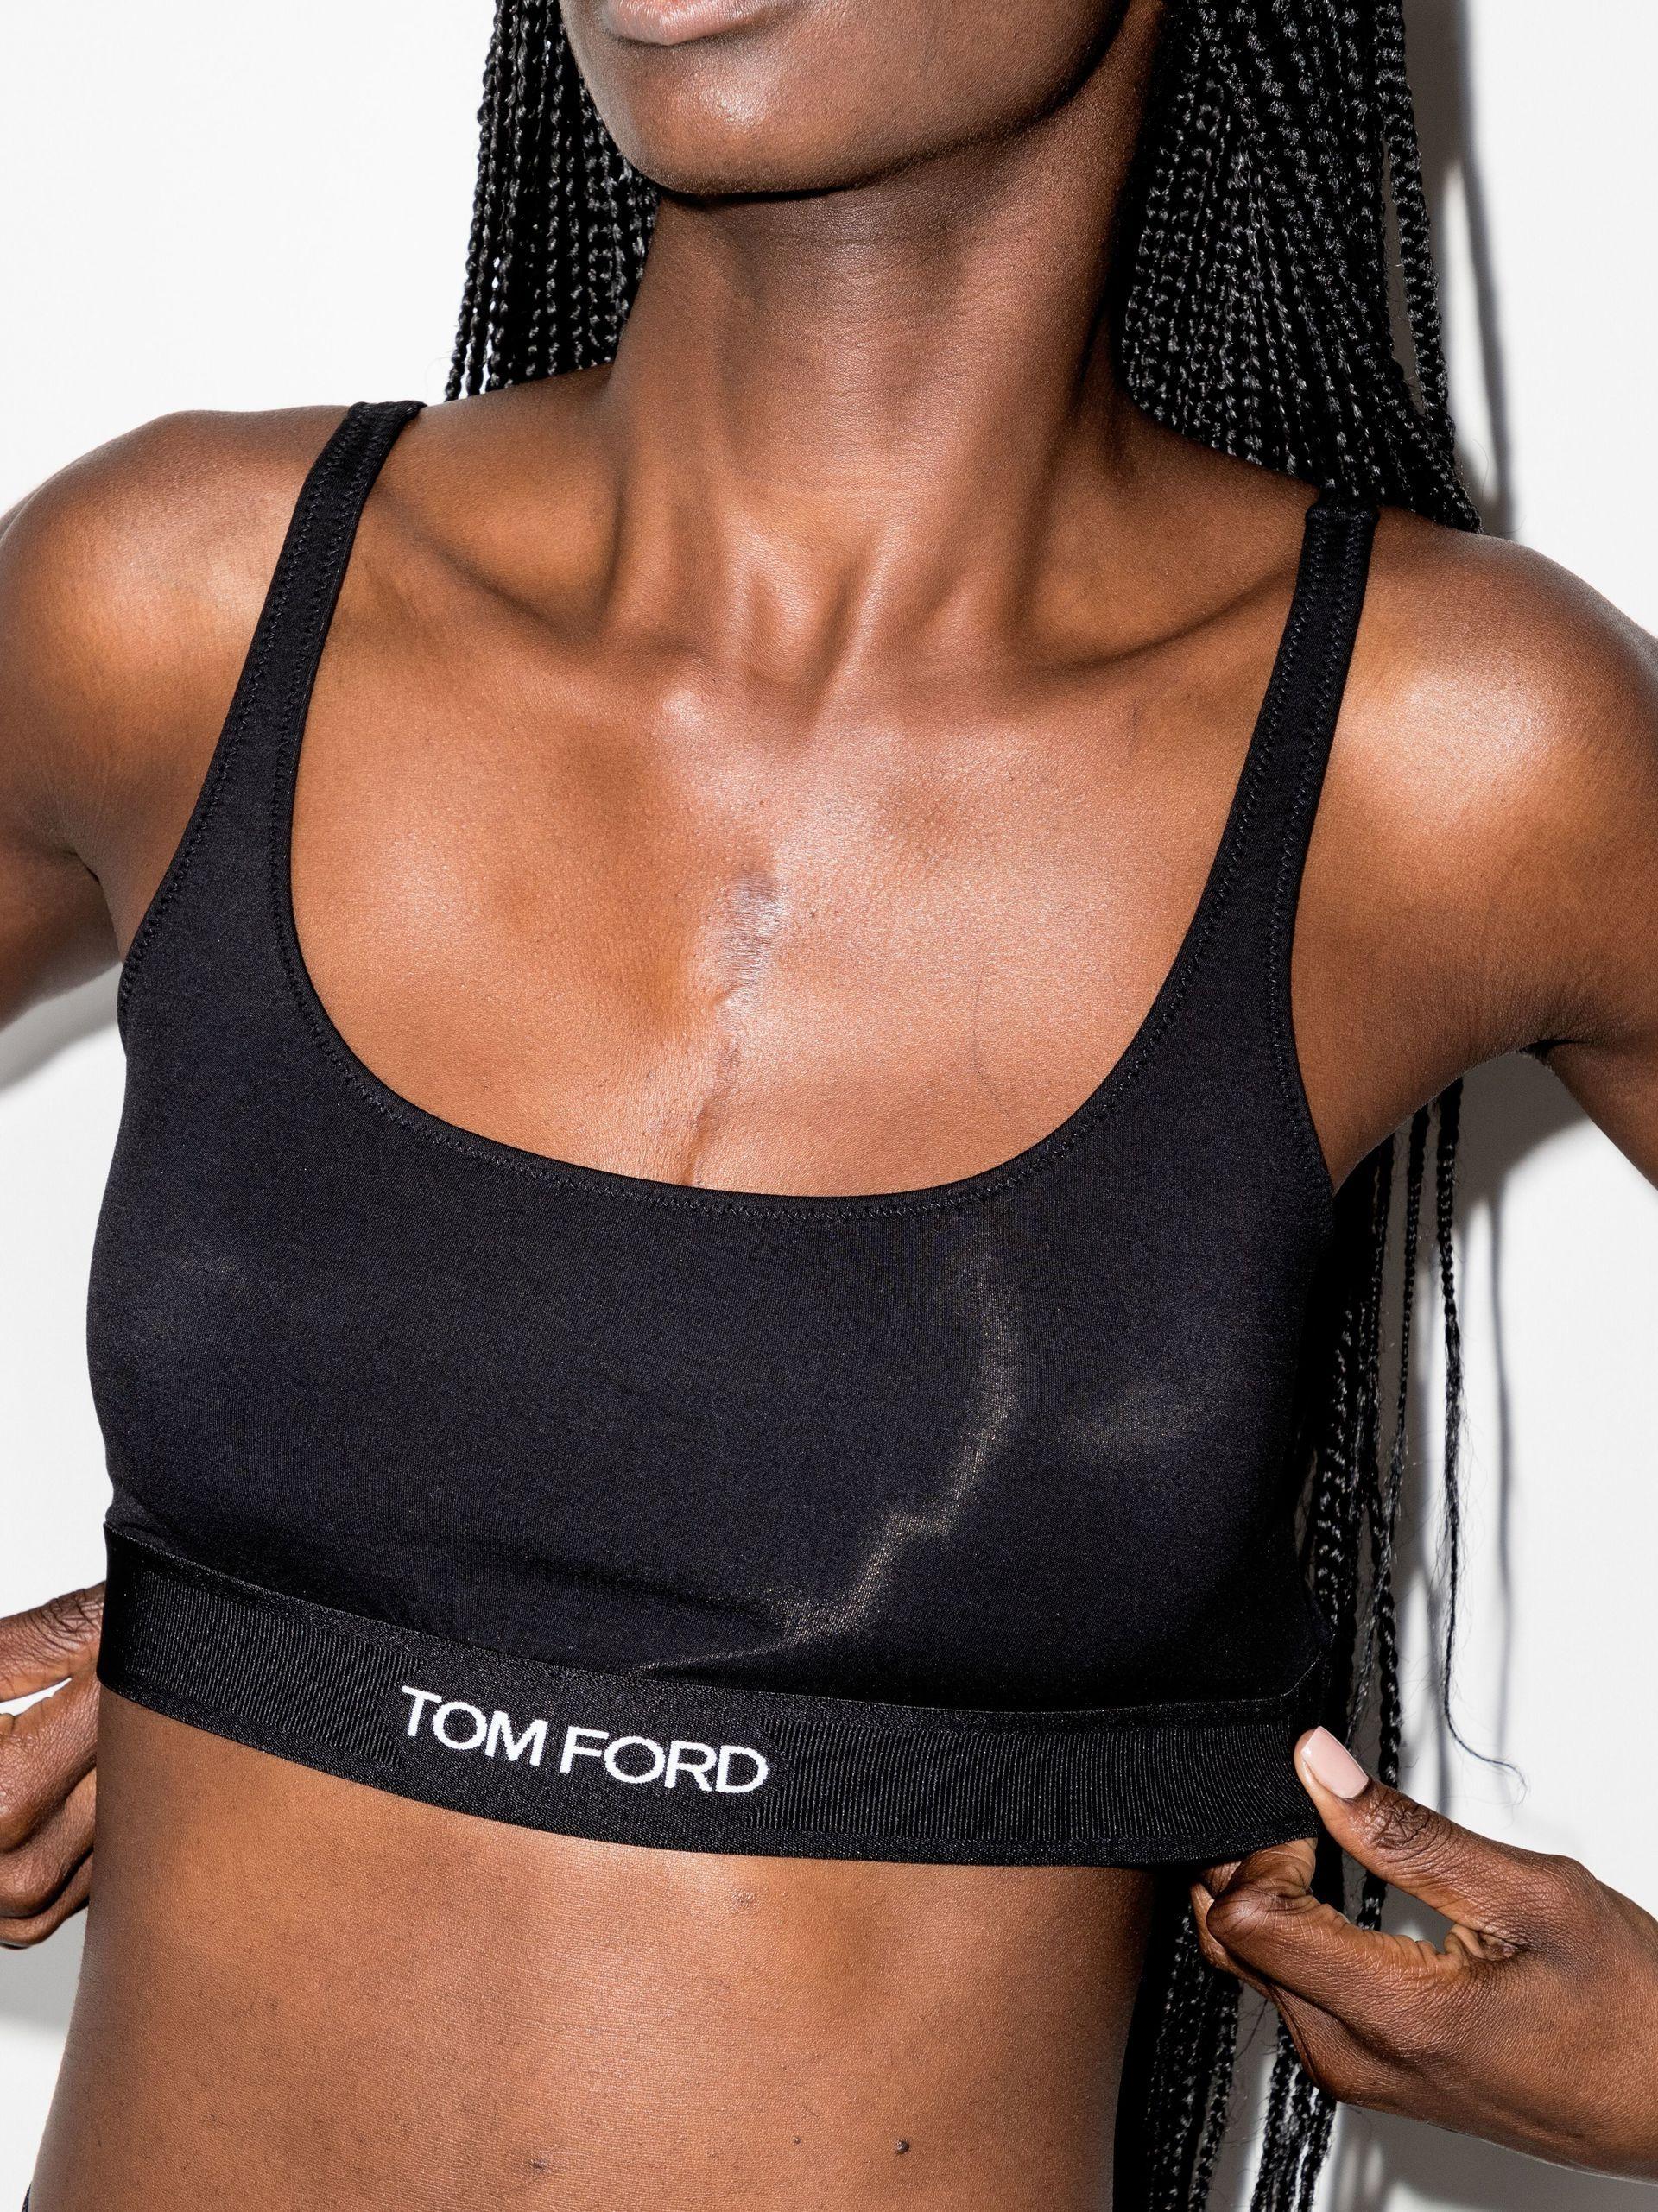 Tom Ford Logo Bralette Top in Black